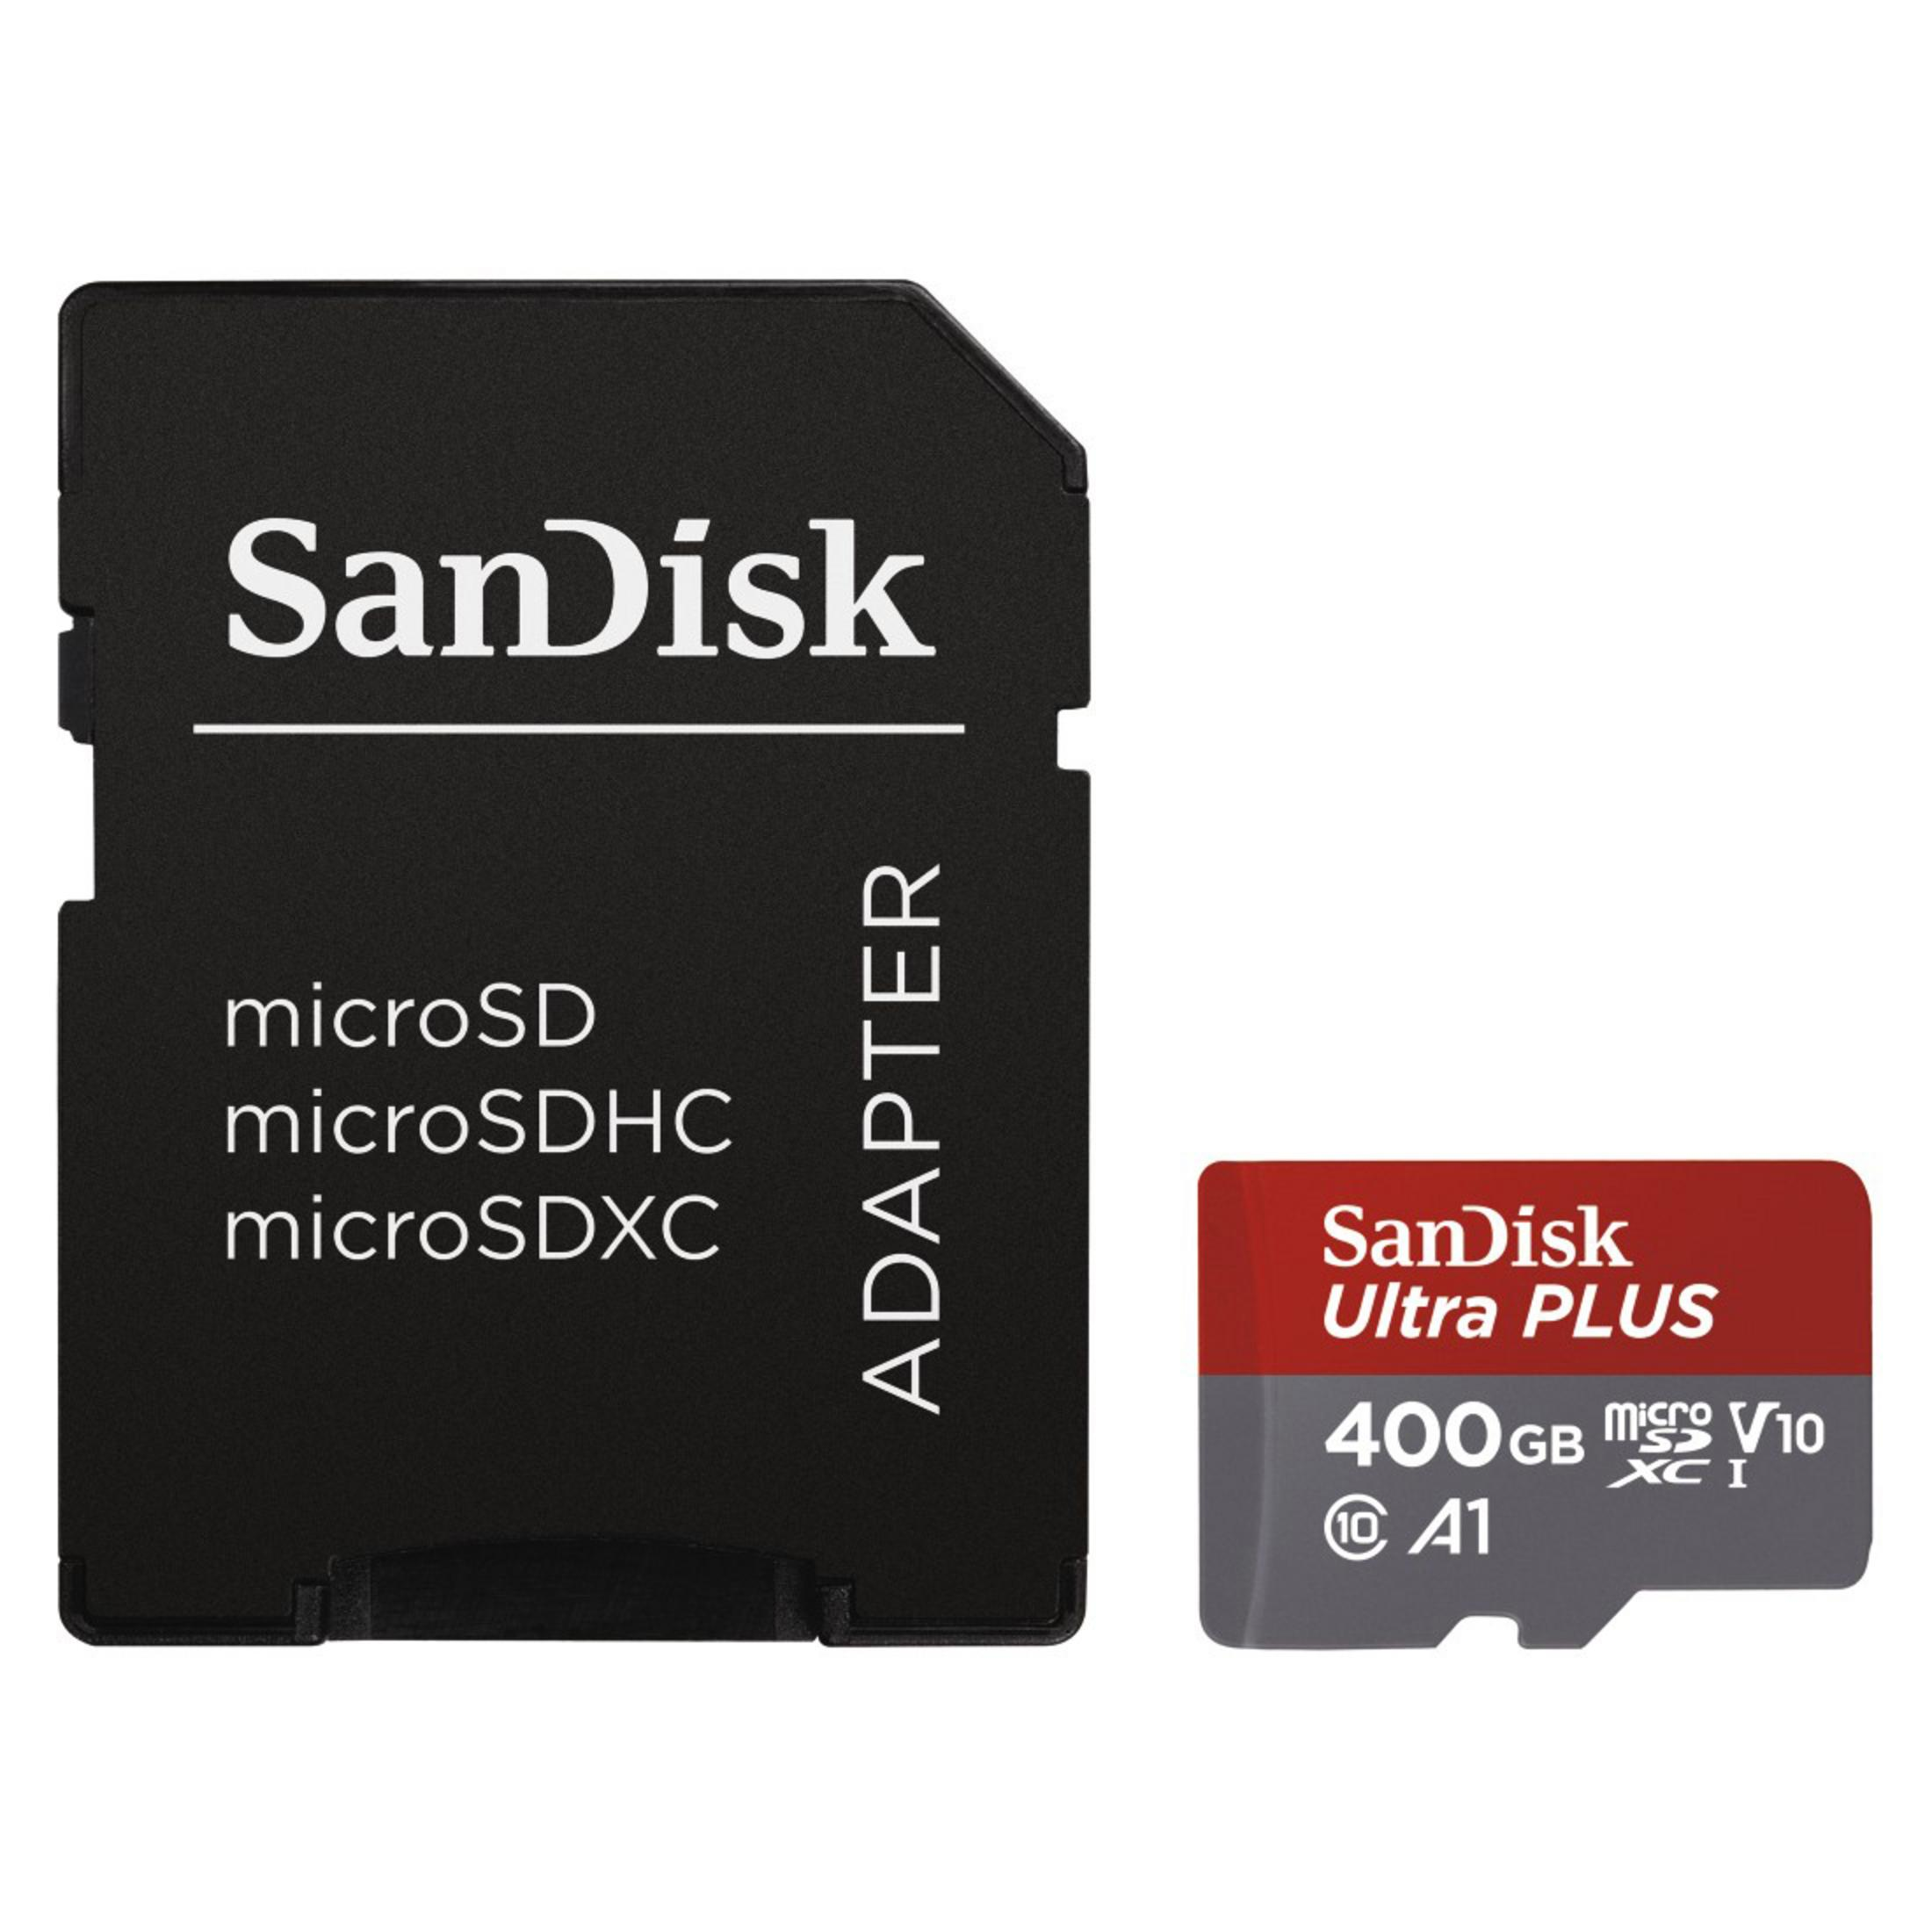 SANDISK 173478 MSDXC Micro-SDXC MB/s GB, 100 ULT. Speicherkarte, 400GB (100MB/S,UH, 400